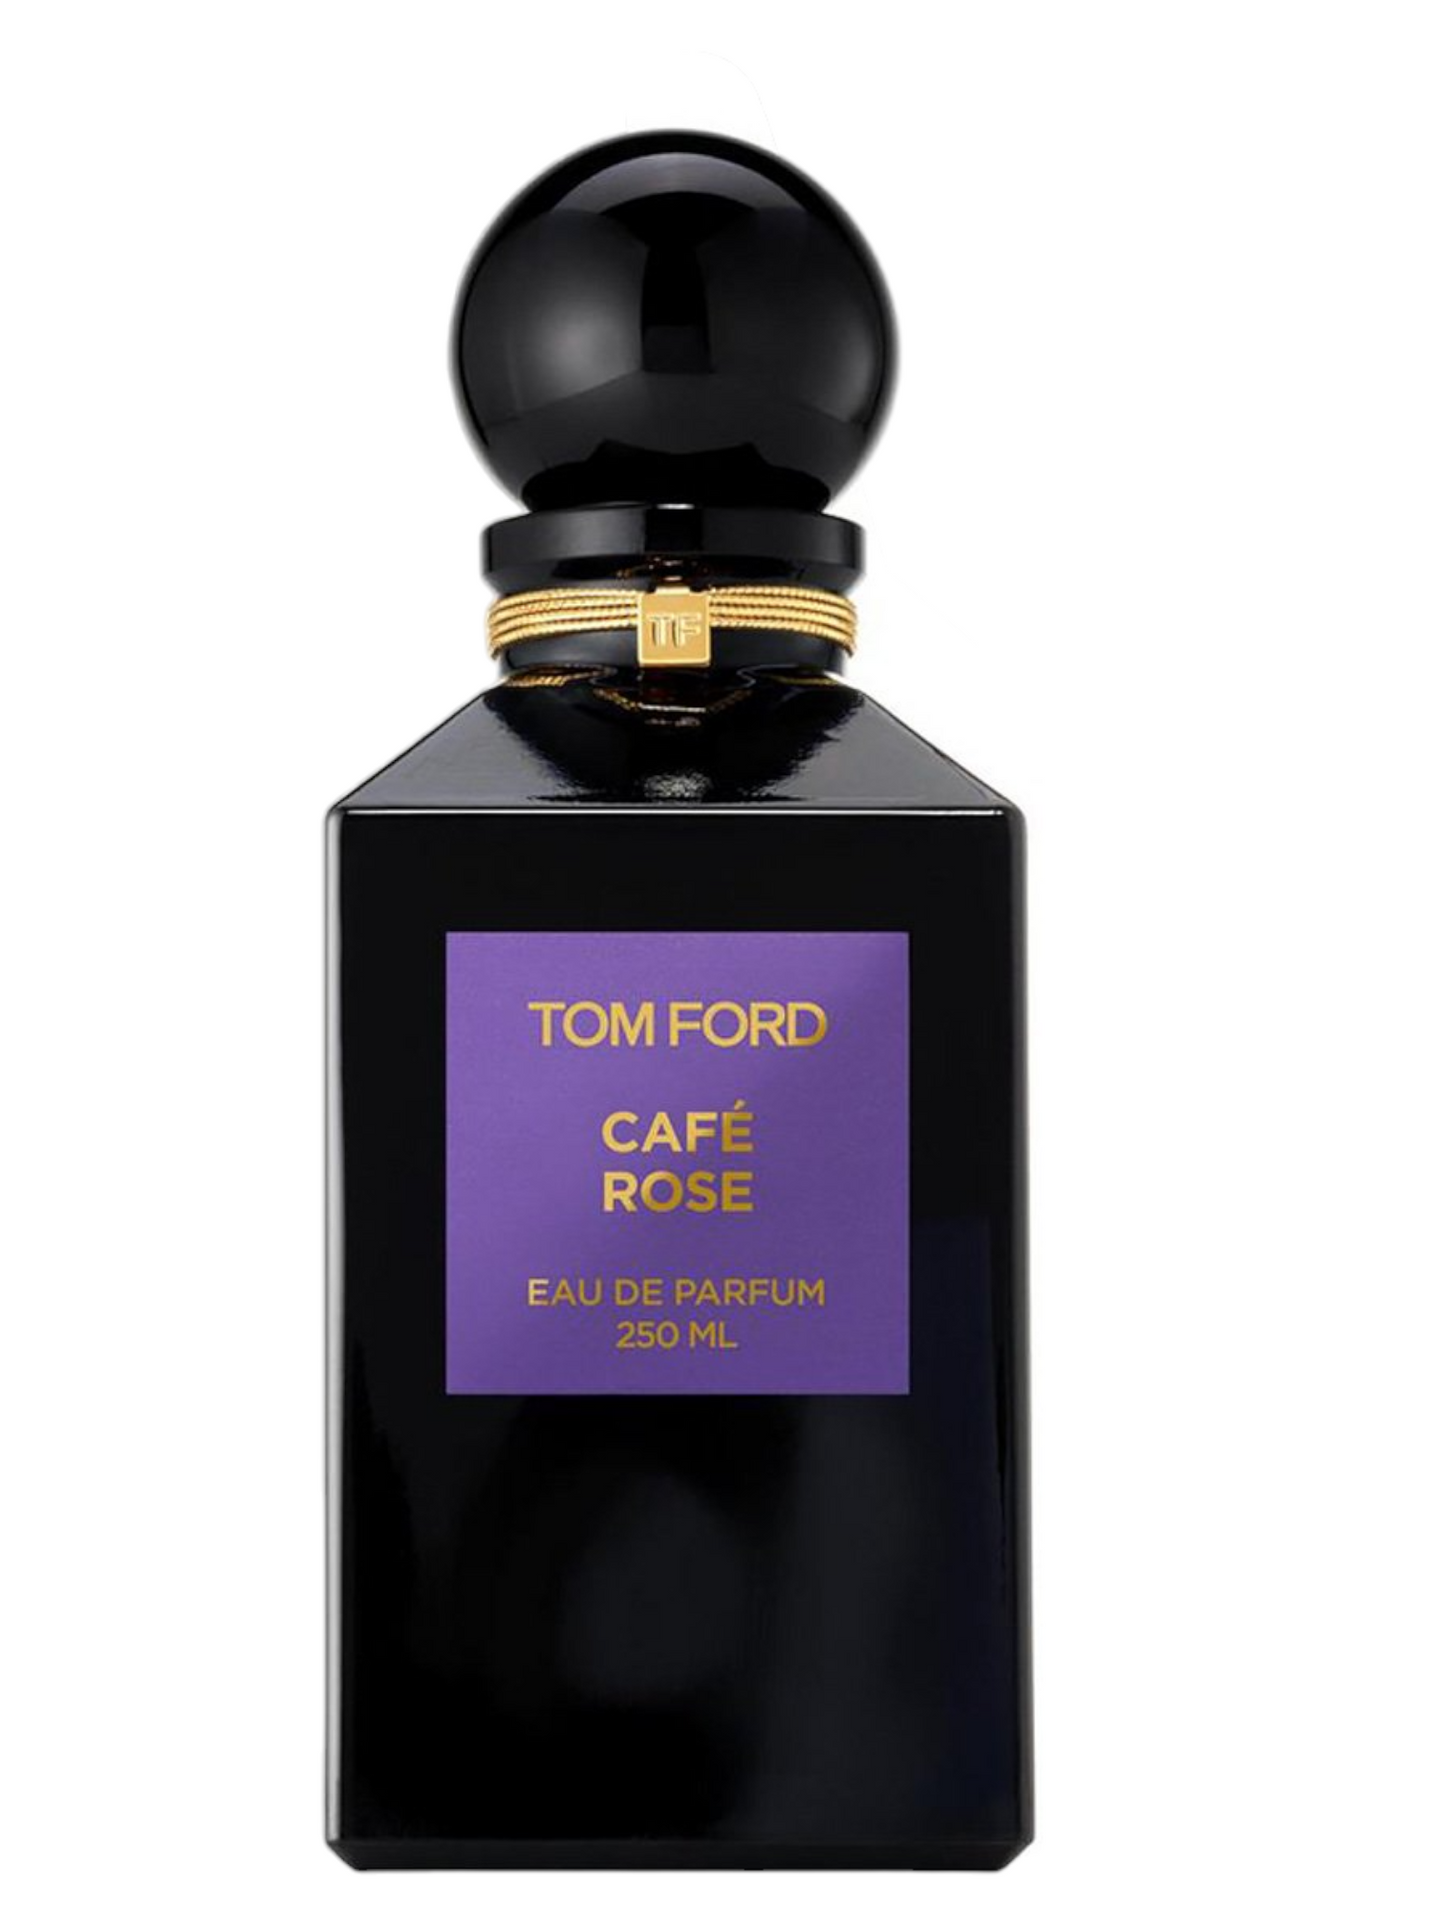 Tom Ford Cafe Rose Private Blend Eau De Parfum Decant Select Size